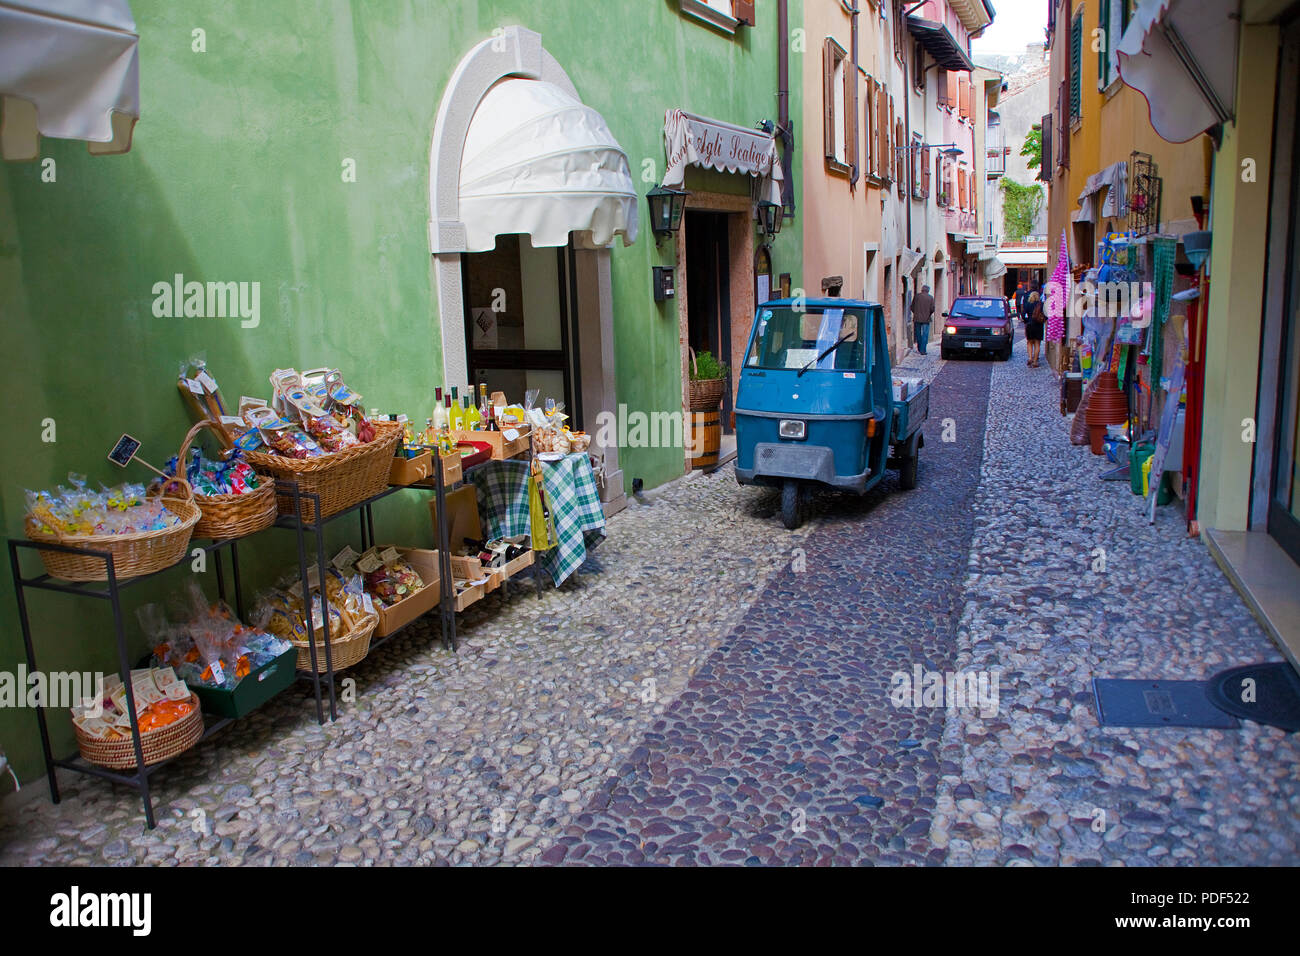 Traditionelle Apecar in einer Gasse, Altstadt von Malcesine, Provinz Verona, Gardasee, Lombardei, Italien Stockfoto